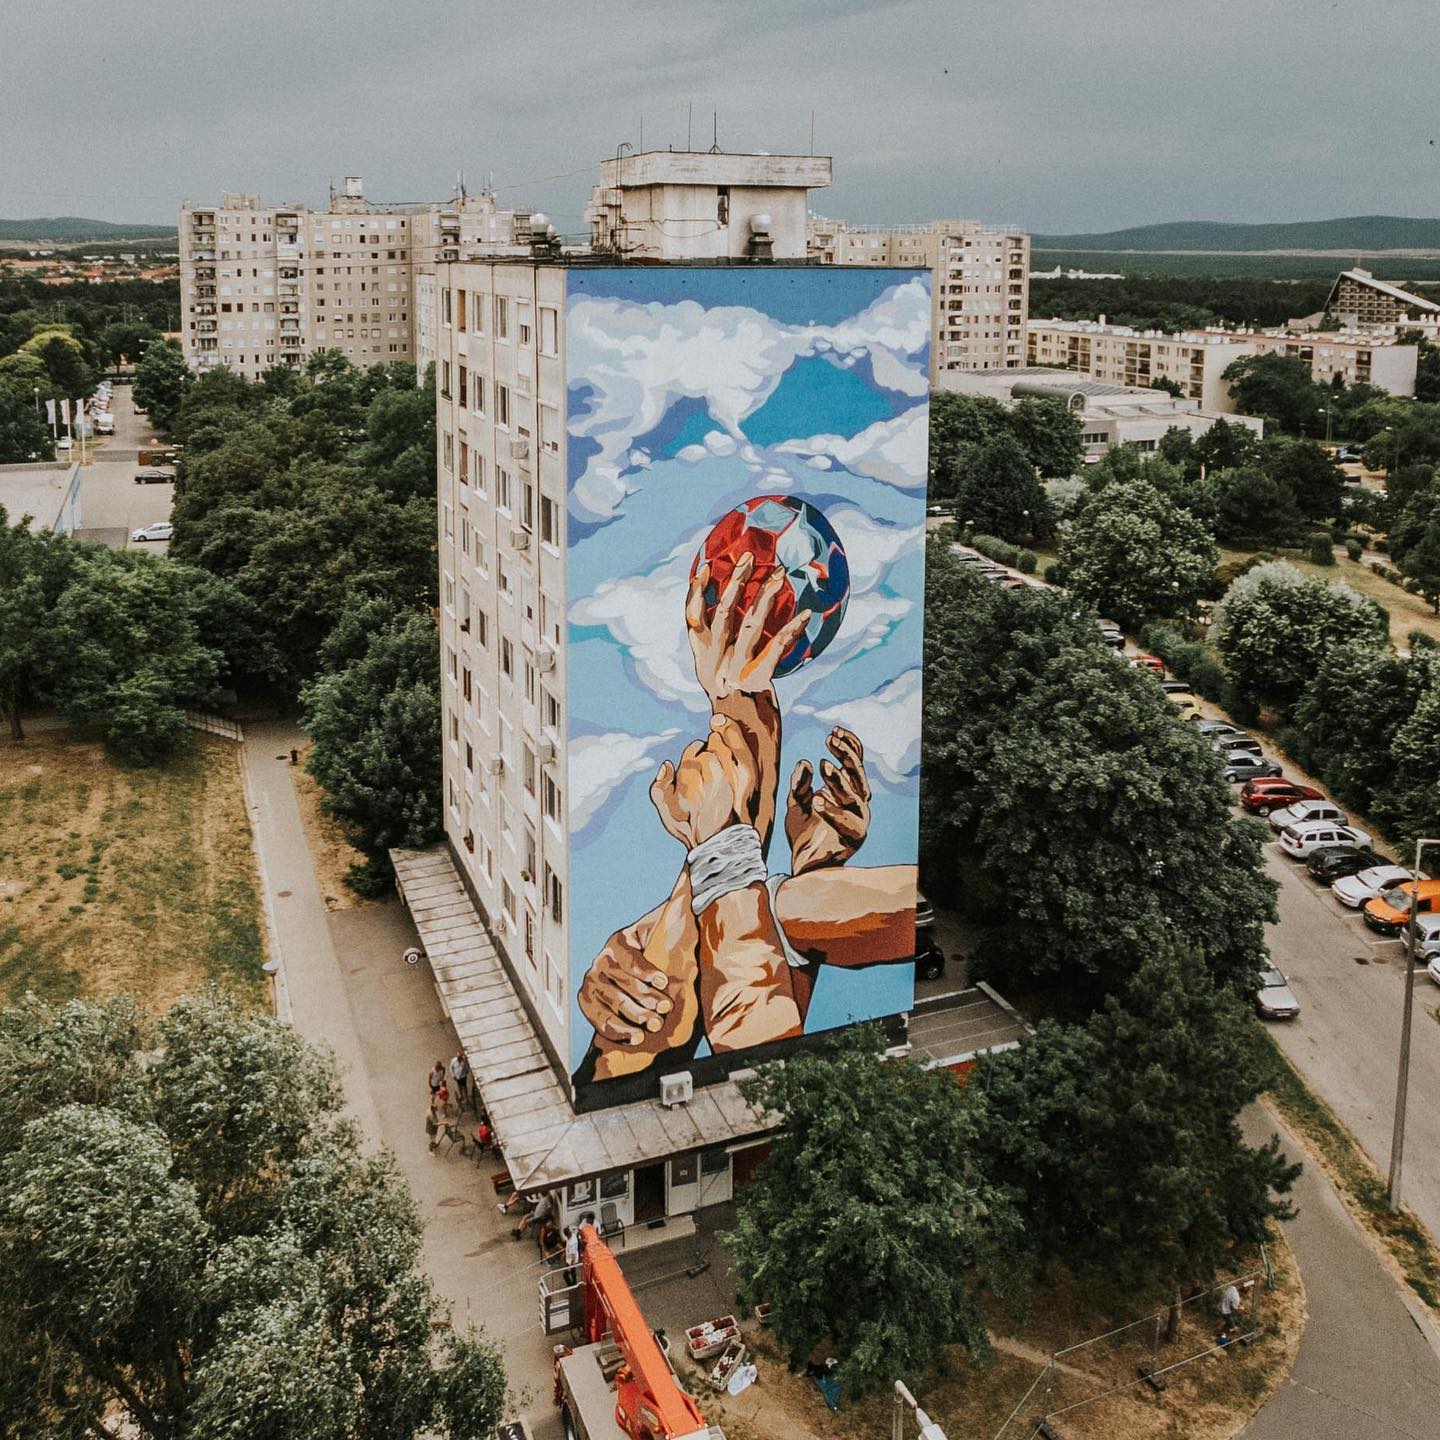 Elkészült a Westprememural, Veszprém első tűzfalfestménye